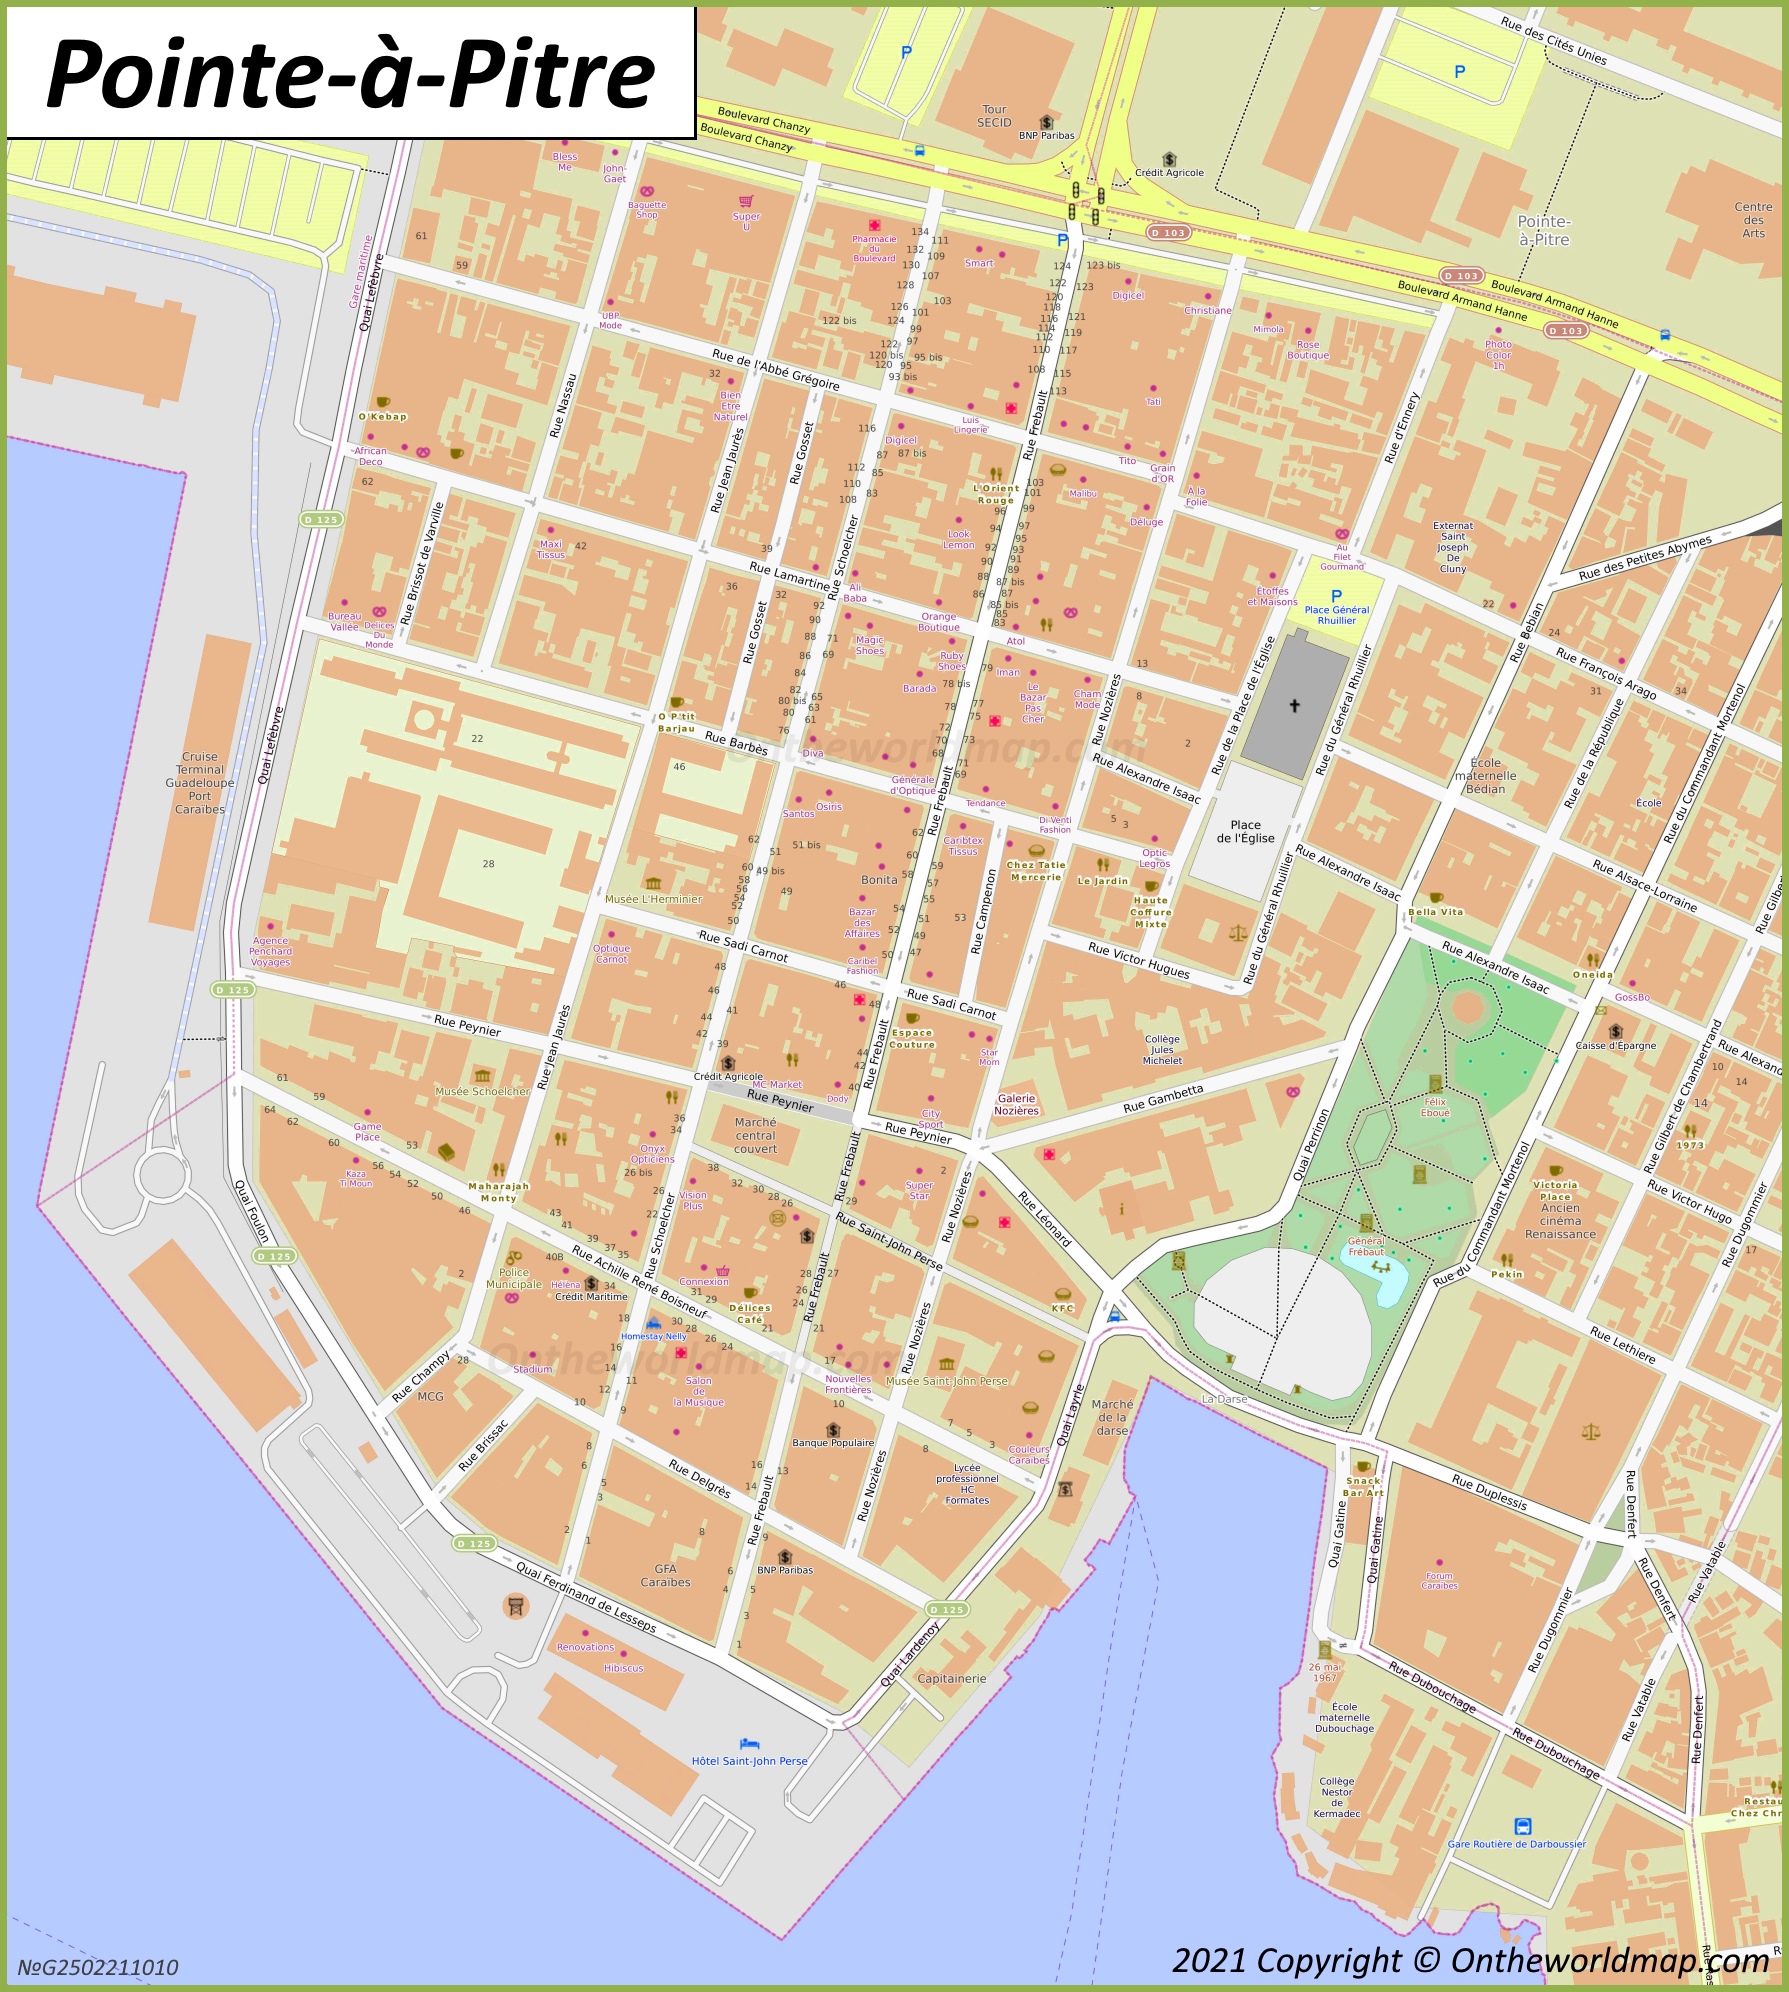 Pointe-à-Pitre City Center Map